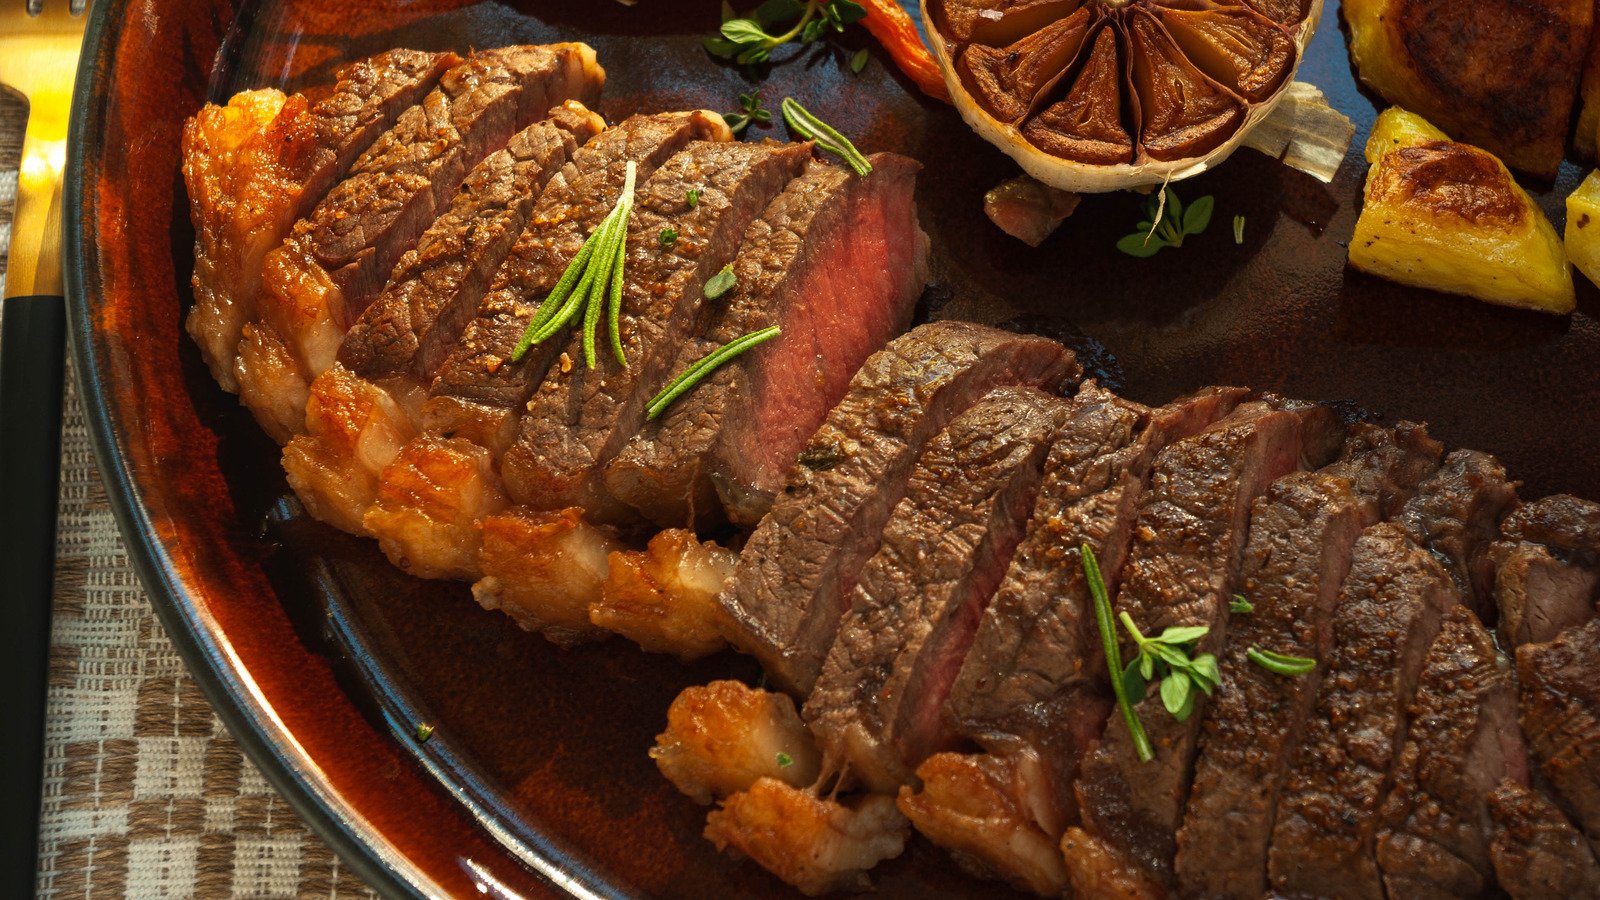 Gordon Ramsay's Steak Recipe